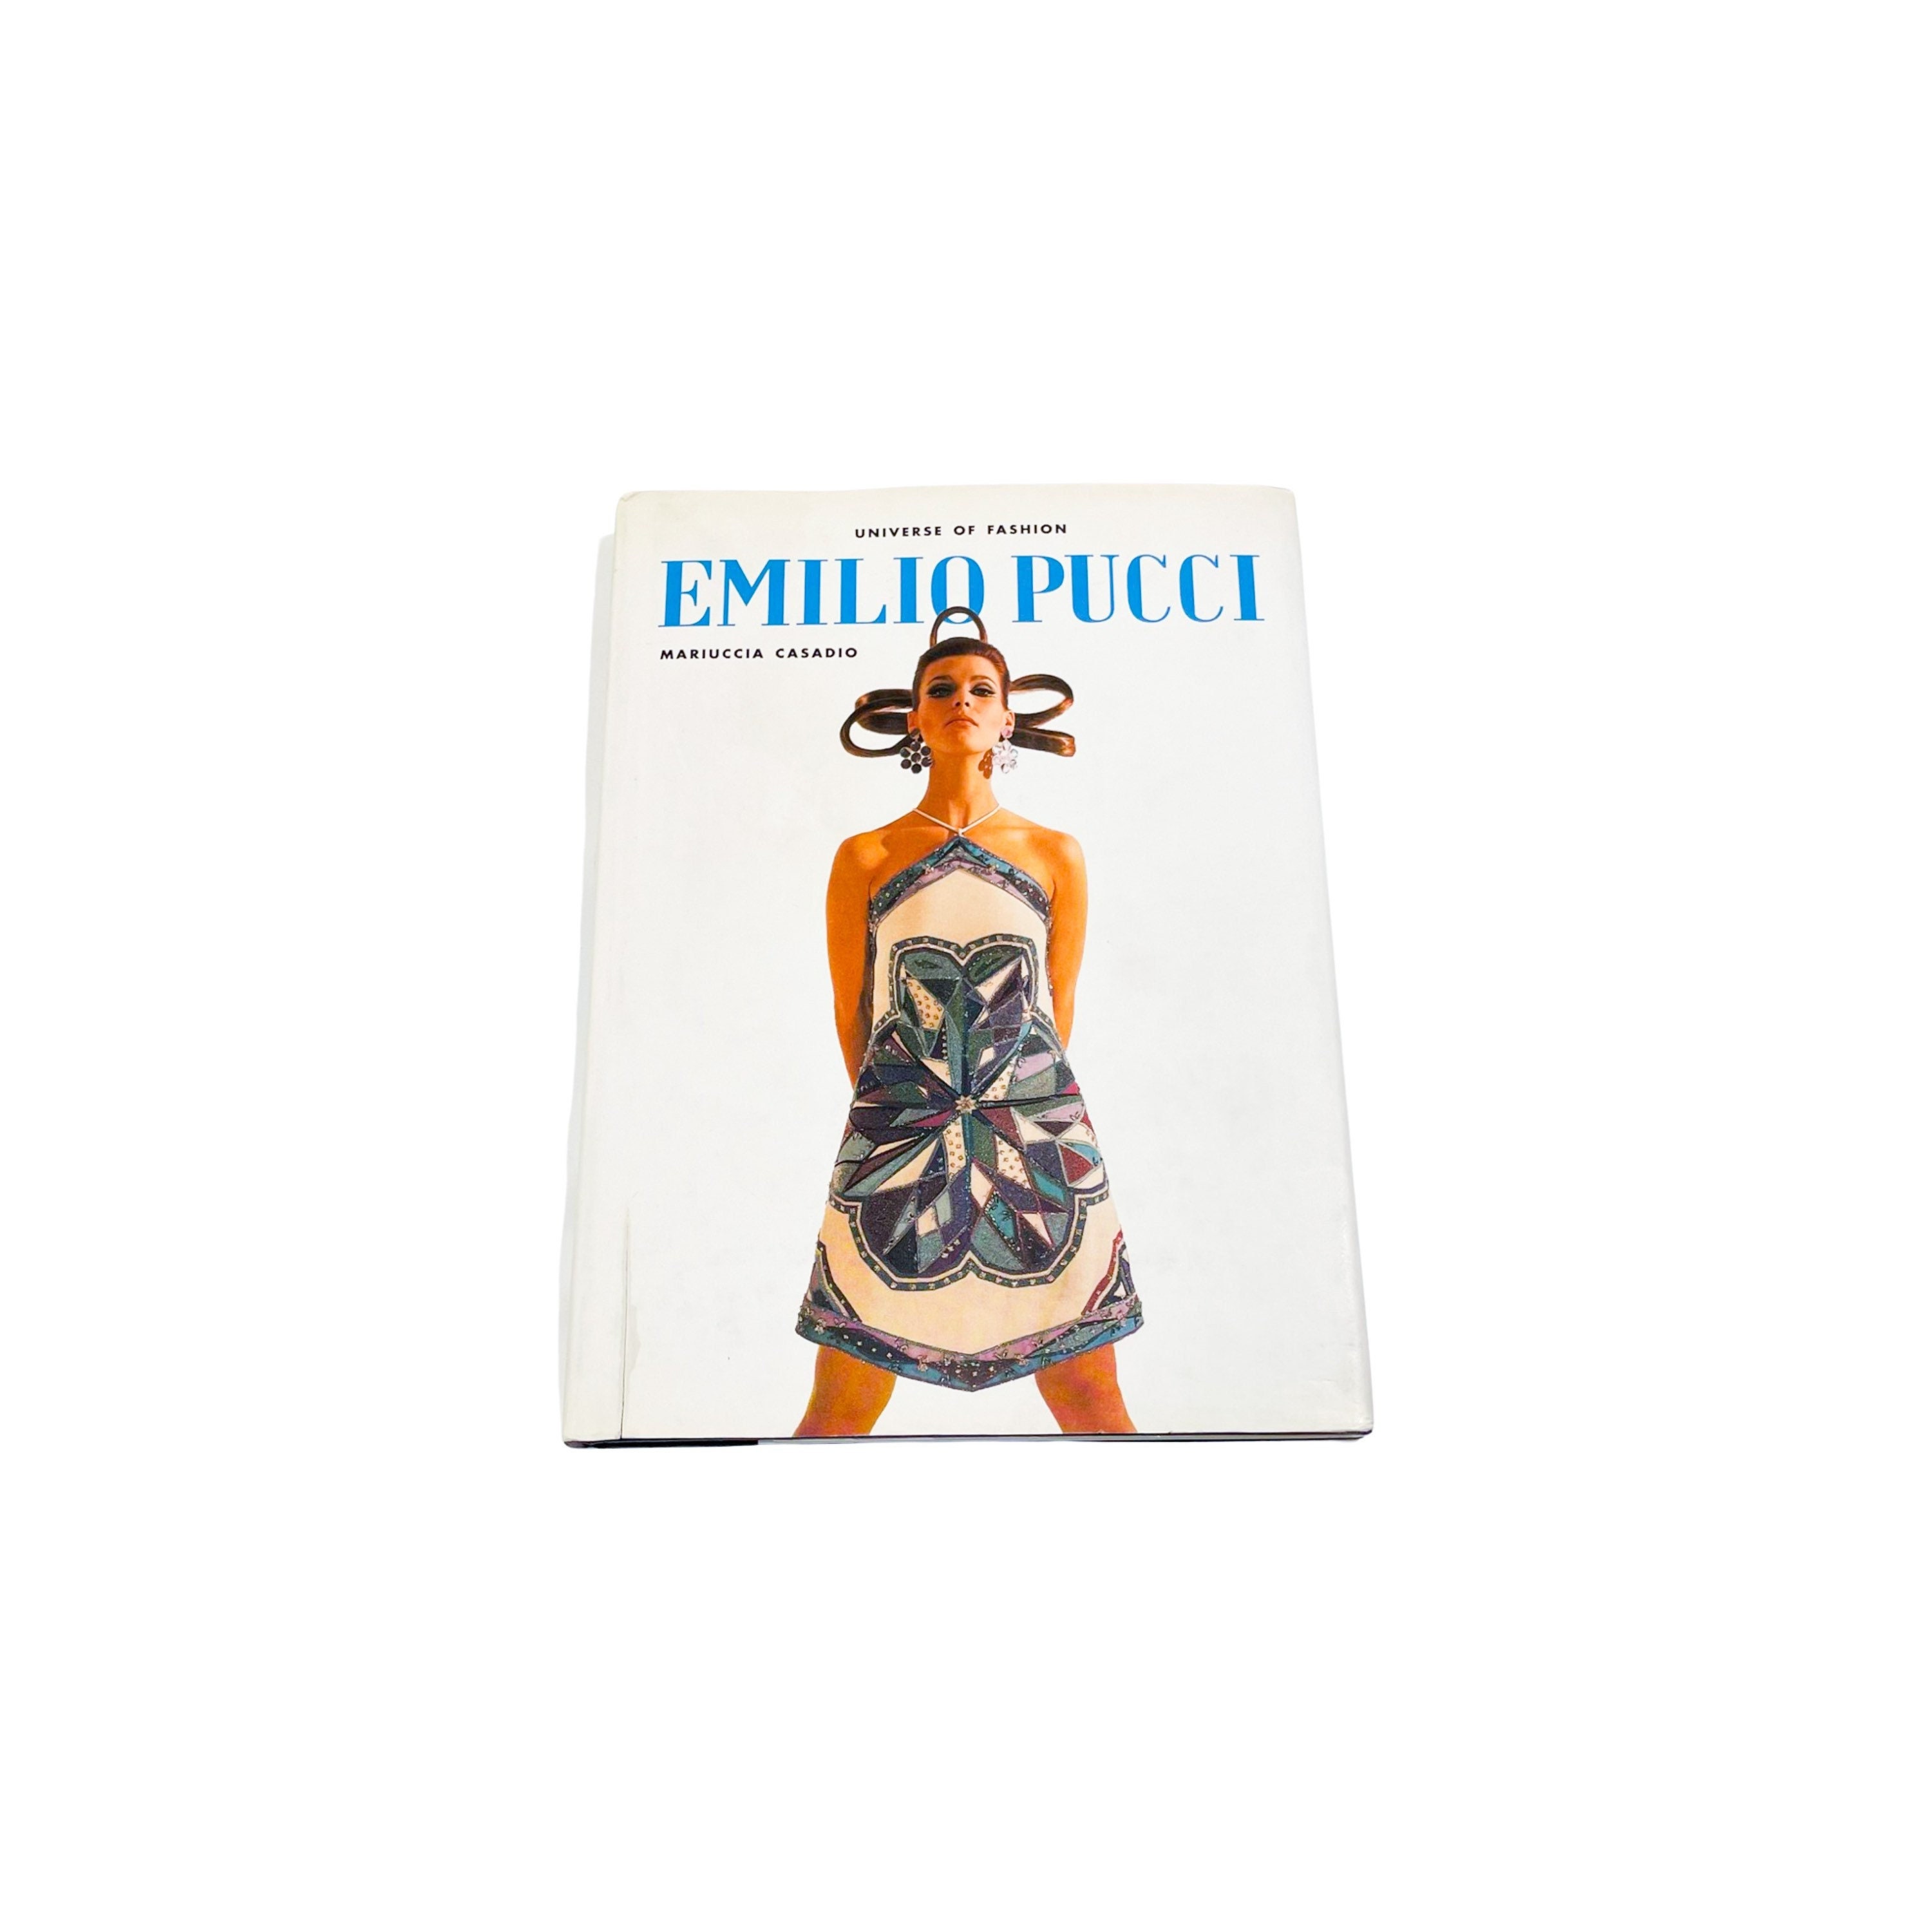 Emilio Pucci (Universe of Fashion)